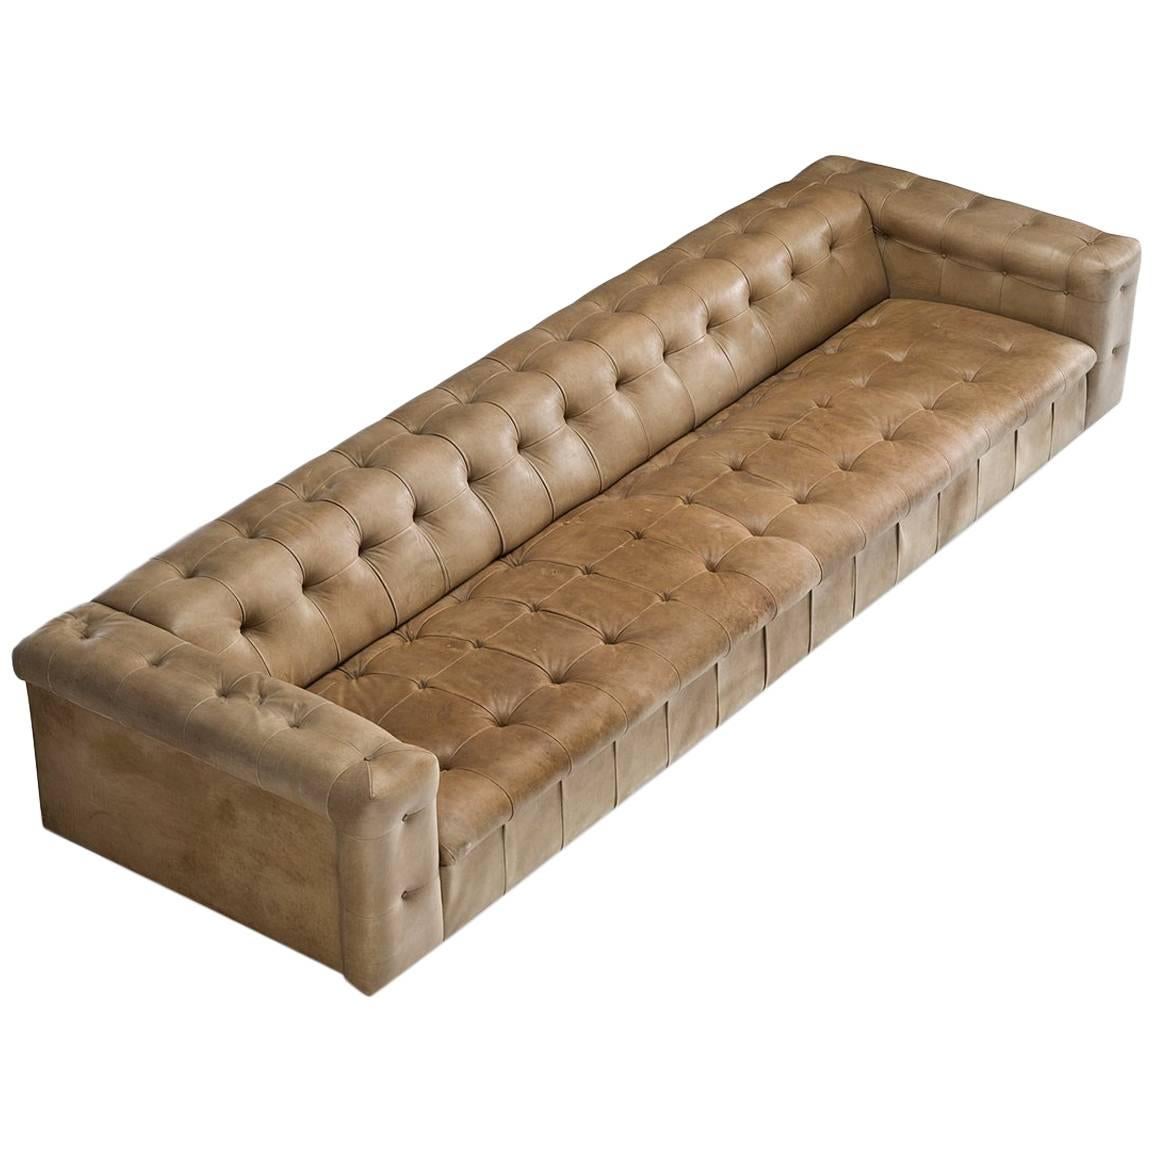 Grand De Sede Caramel Leather Sofa by Robert Haussmann